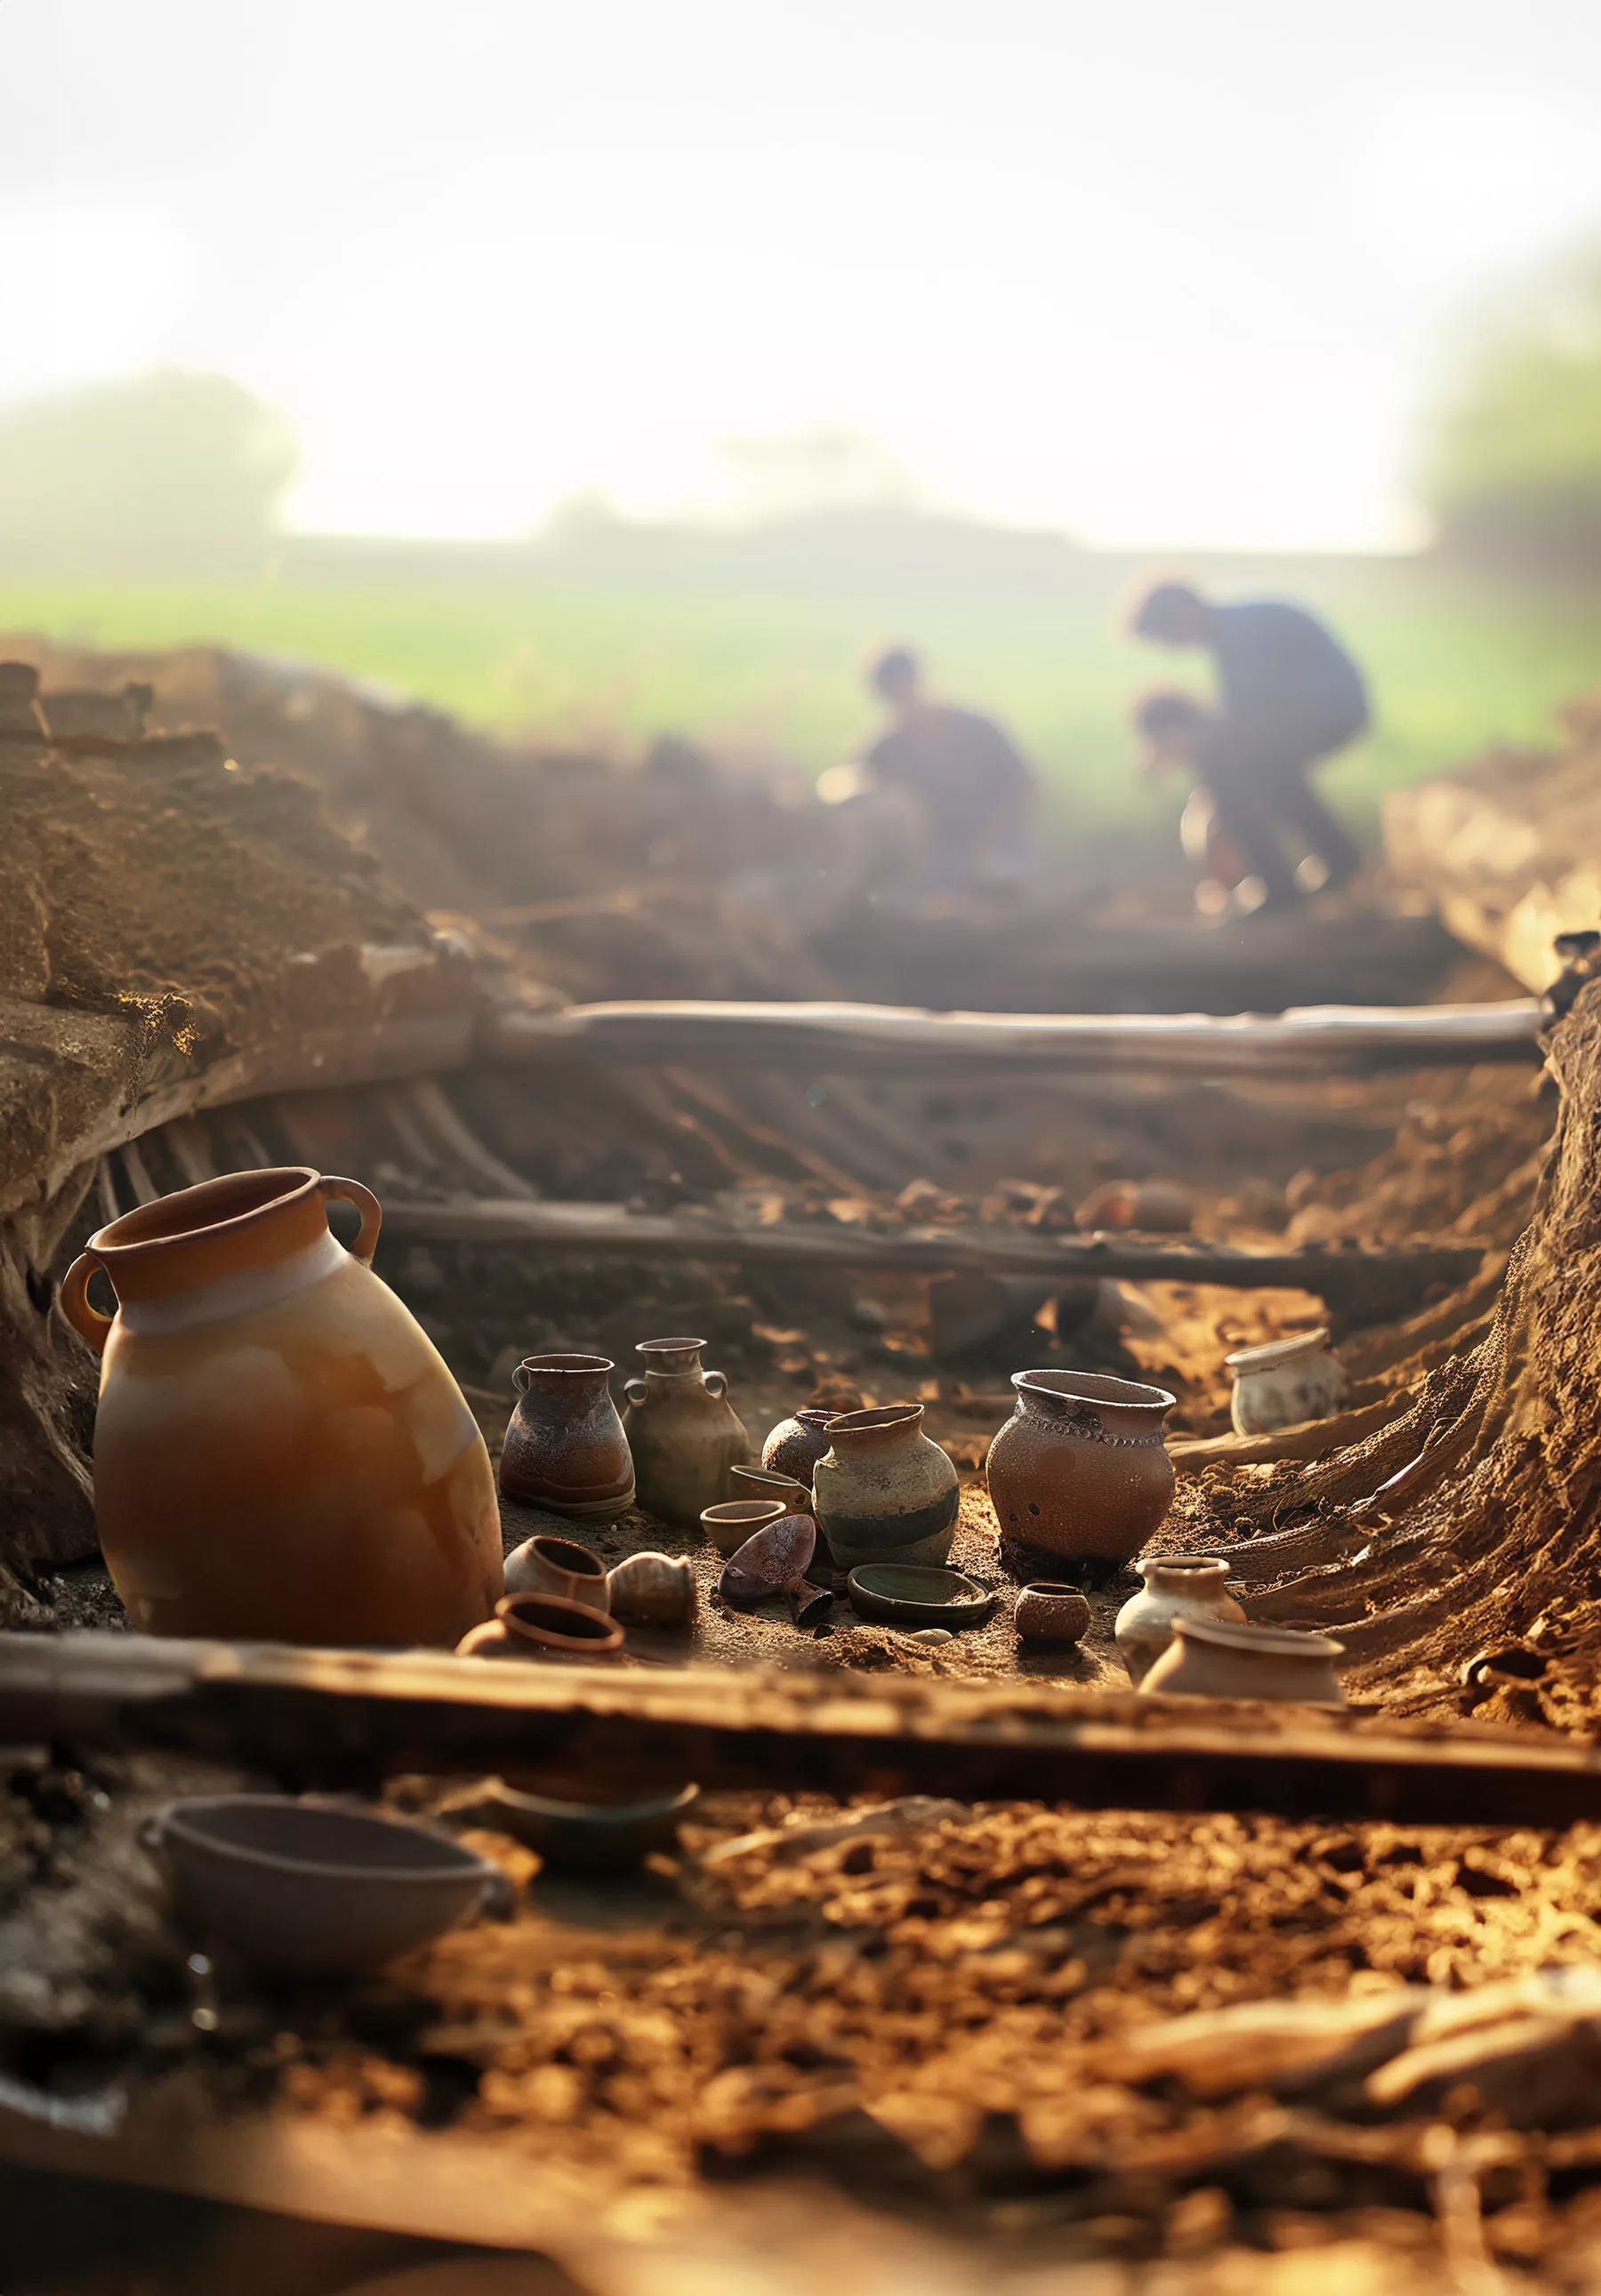 Al jaciment de Sant Jaume d’Alcanar s'hi han trobat incomptables objectes de ceràmica, tant autòctona com fenícia